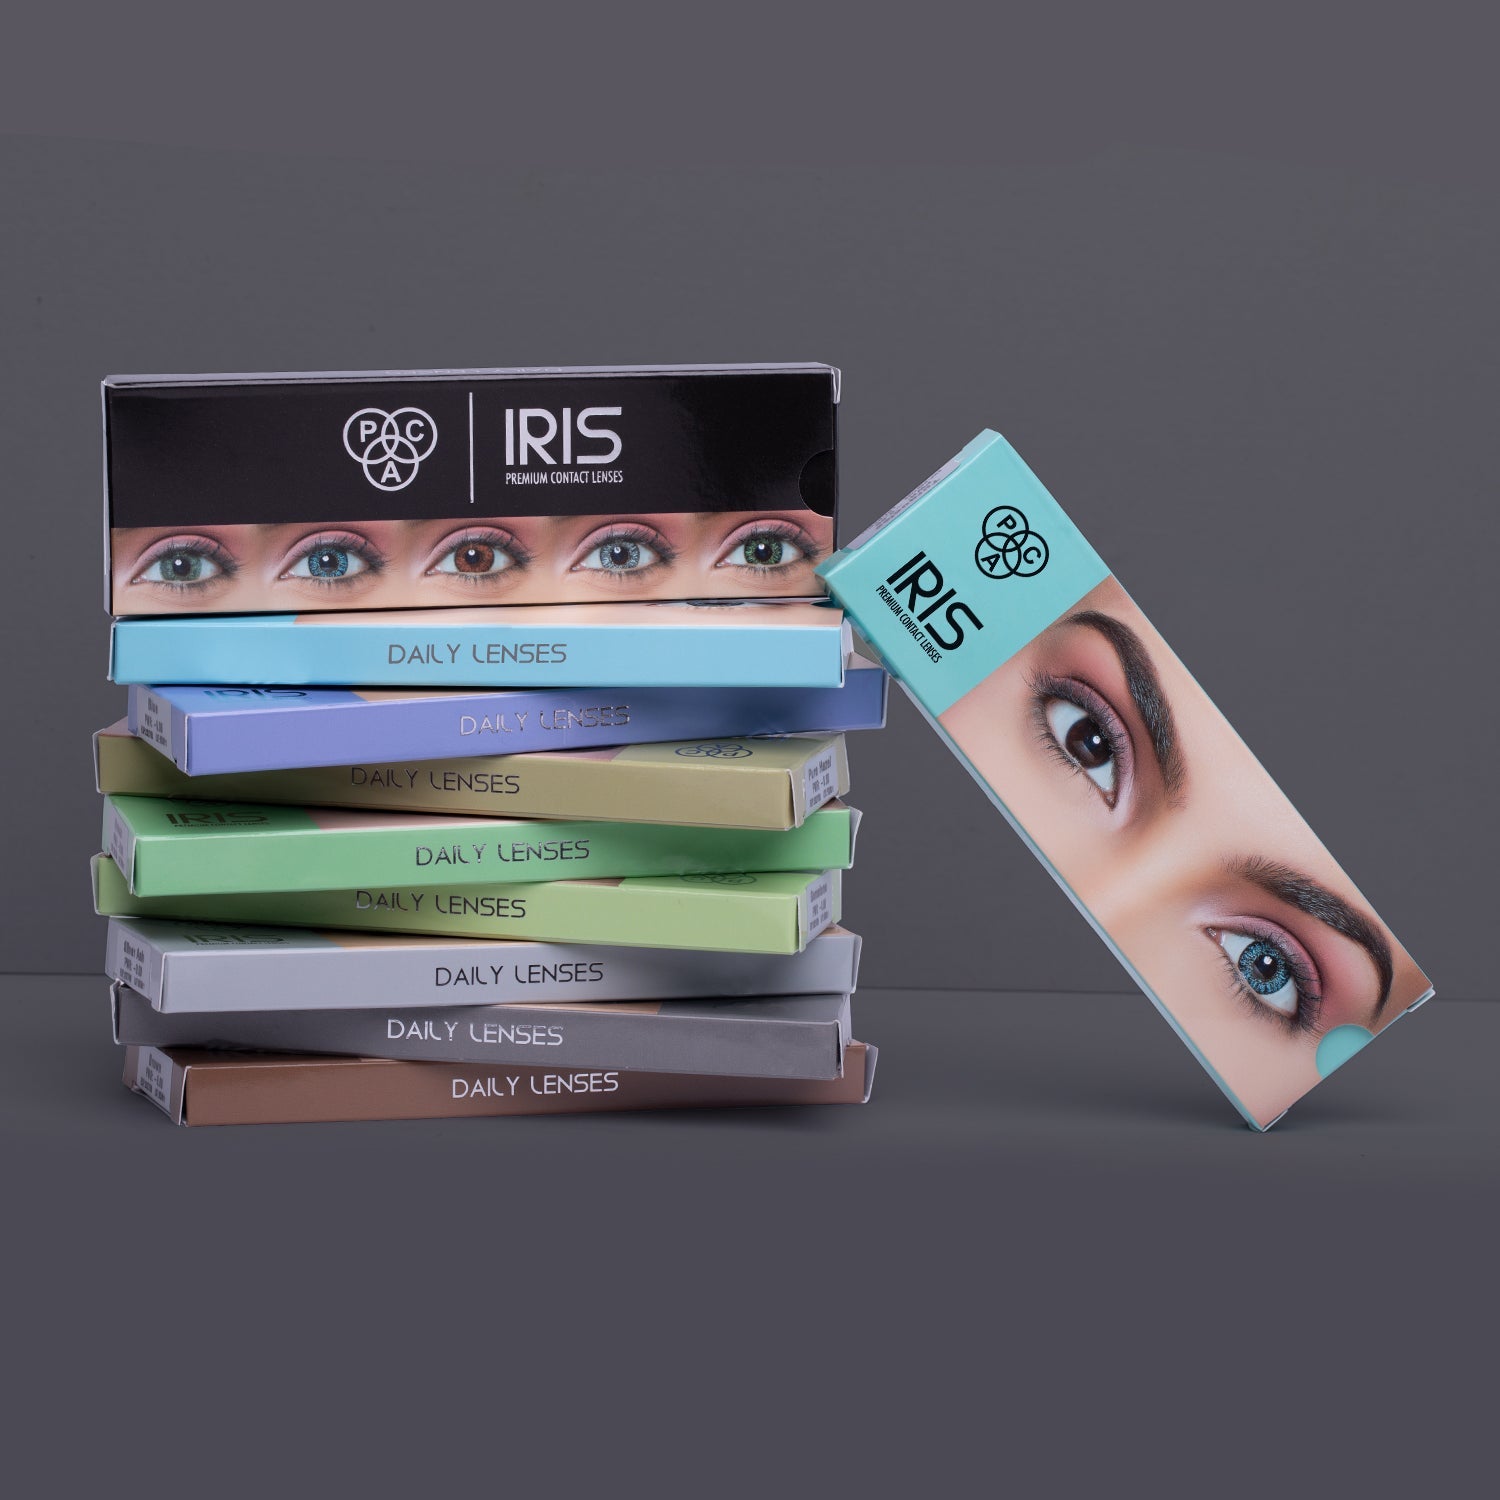 PAC Cosmetics IRIS Premium Contact Lenses (5 Pairs) #Color_Brown